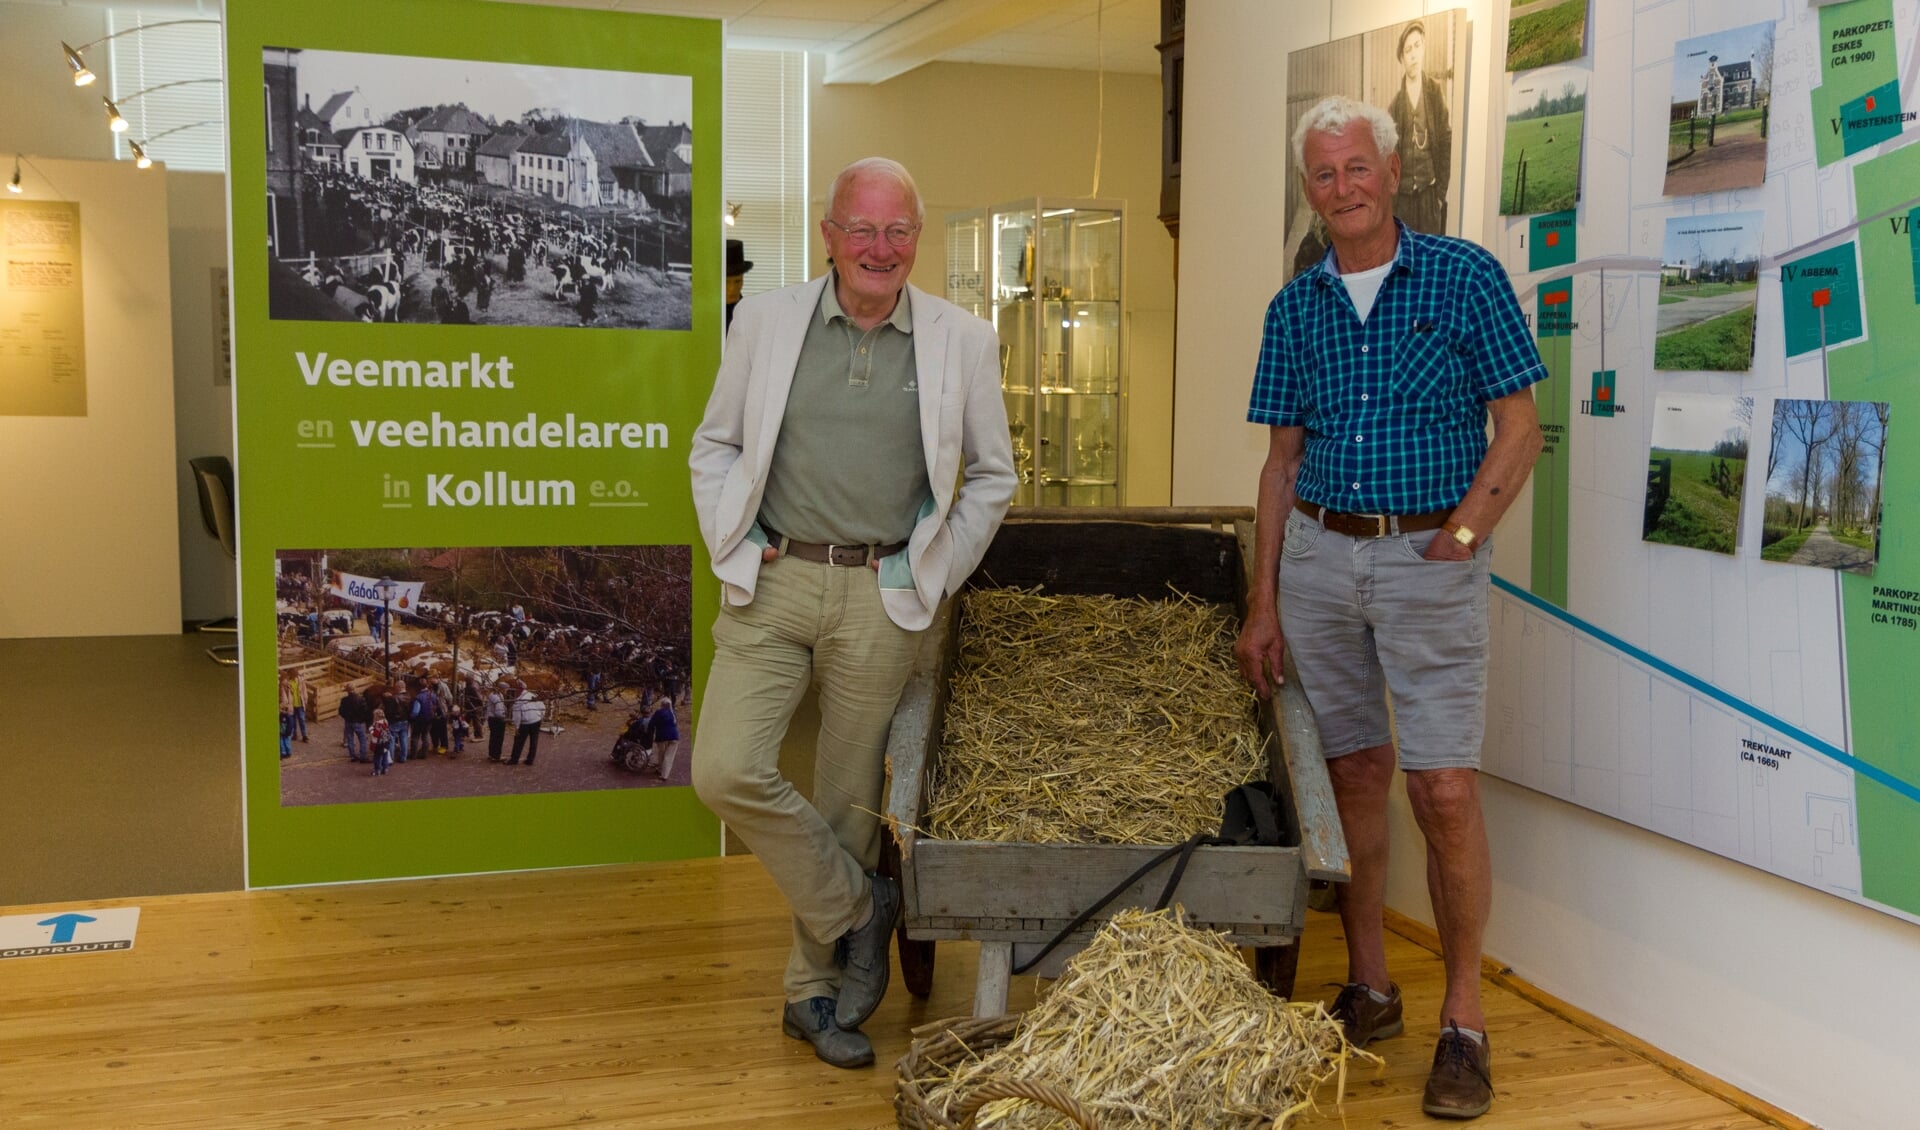 Oebele Vries (links) met Gerrit Dam bij de expositie. Dam verhandelde destijds vee op de markt in Kollum en hij is nog steeds veehandelaar. In de expositie wordt er ook aandacht aan hem besteed.